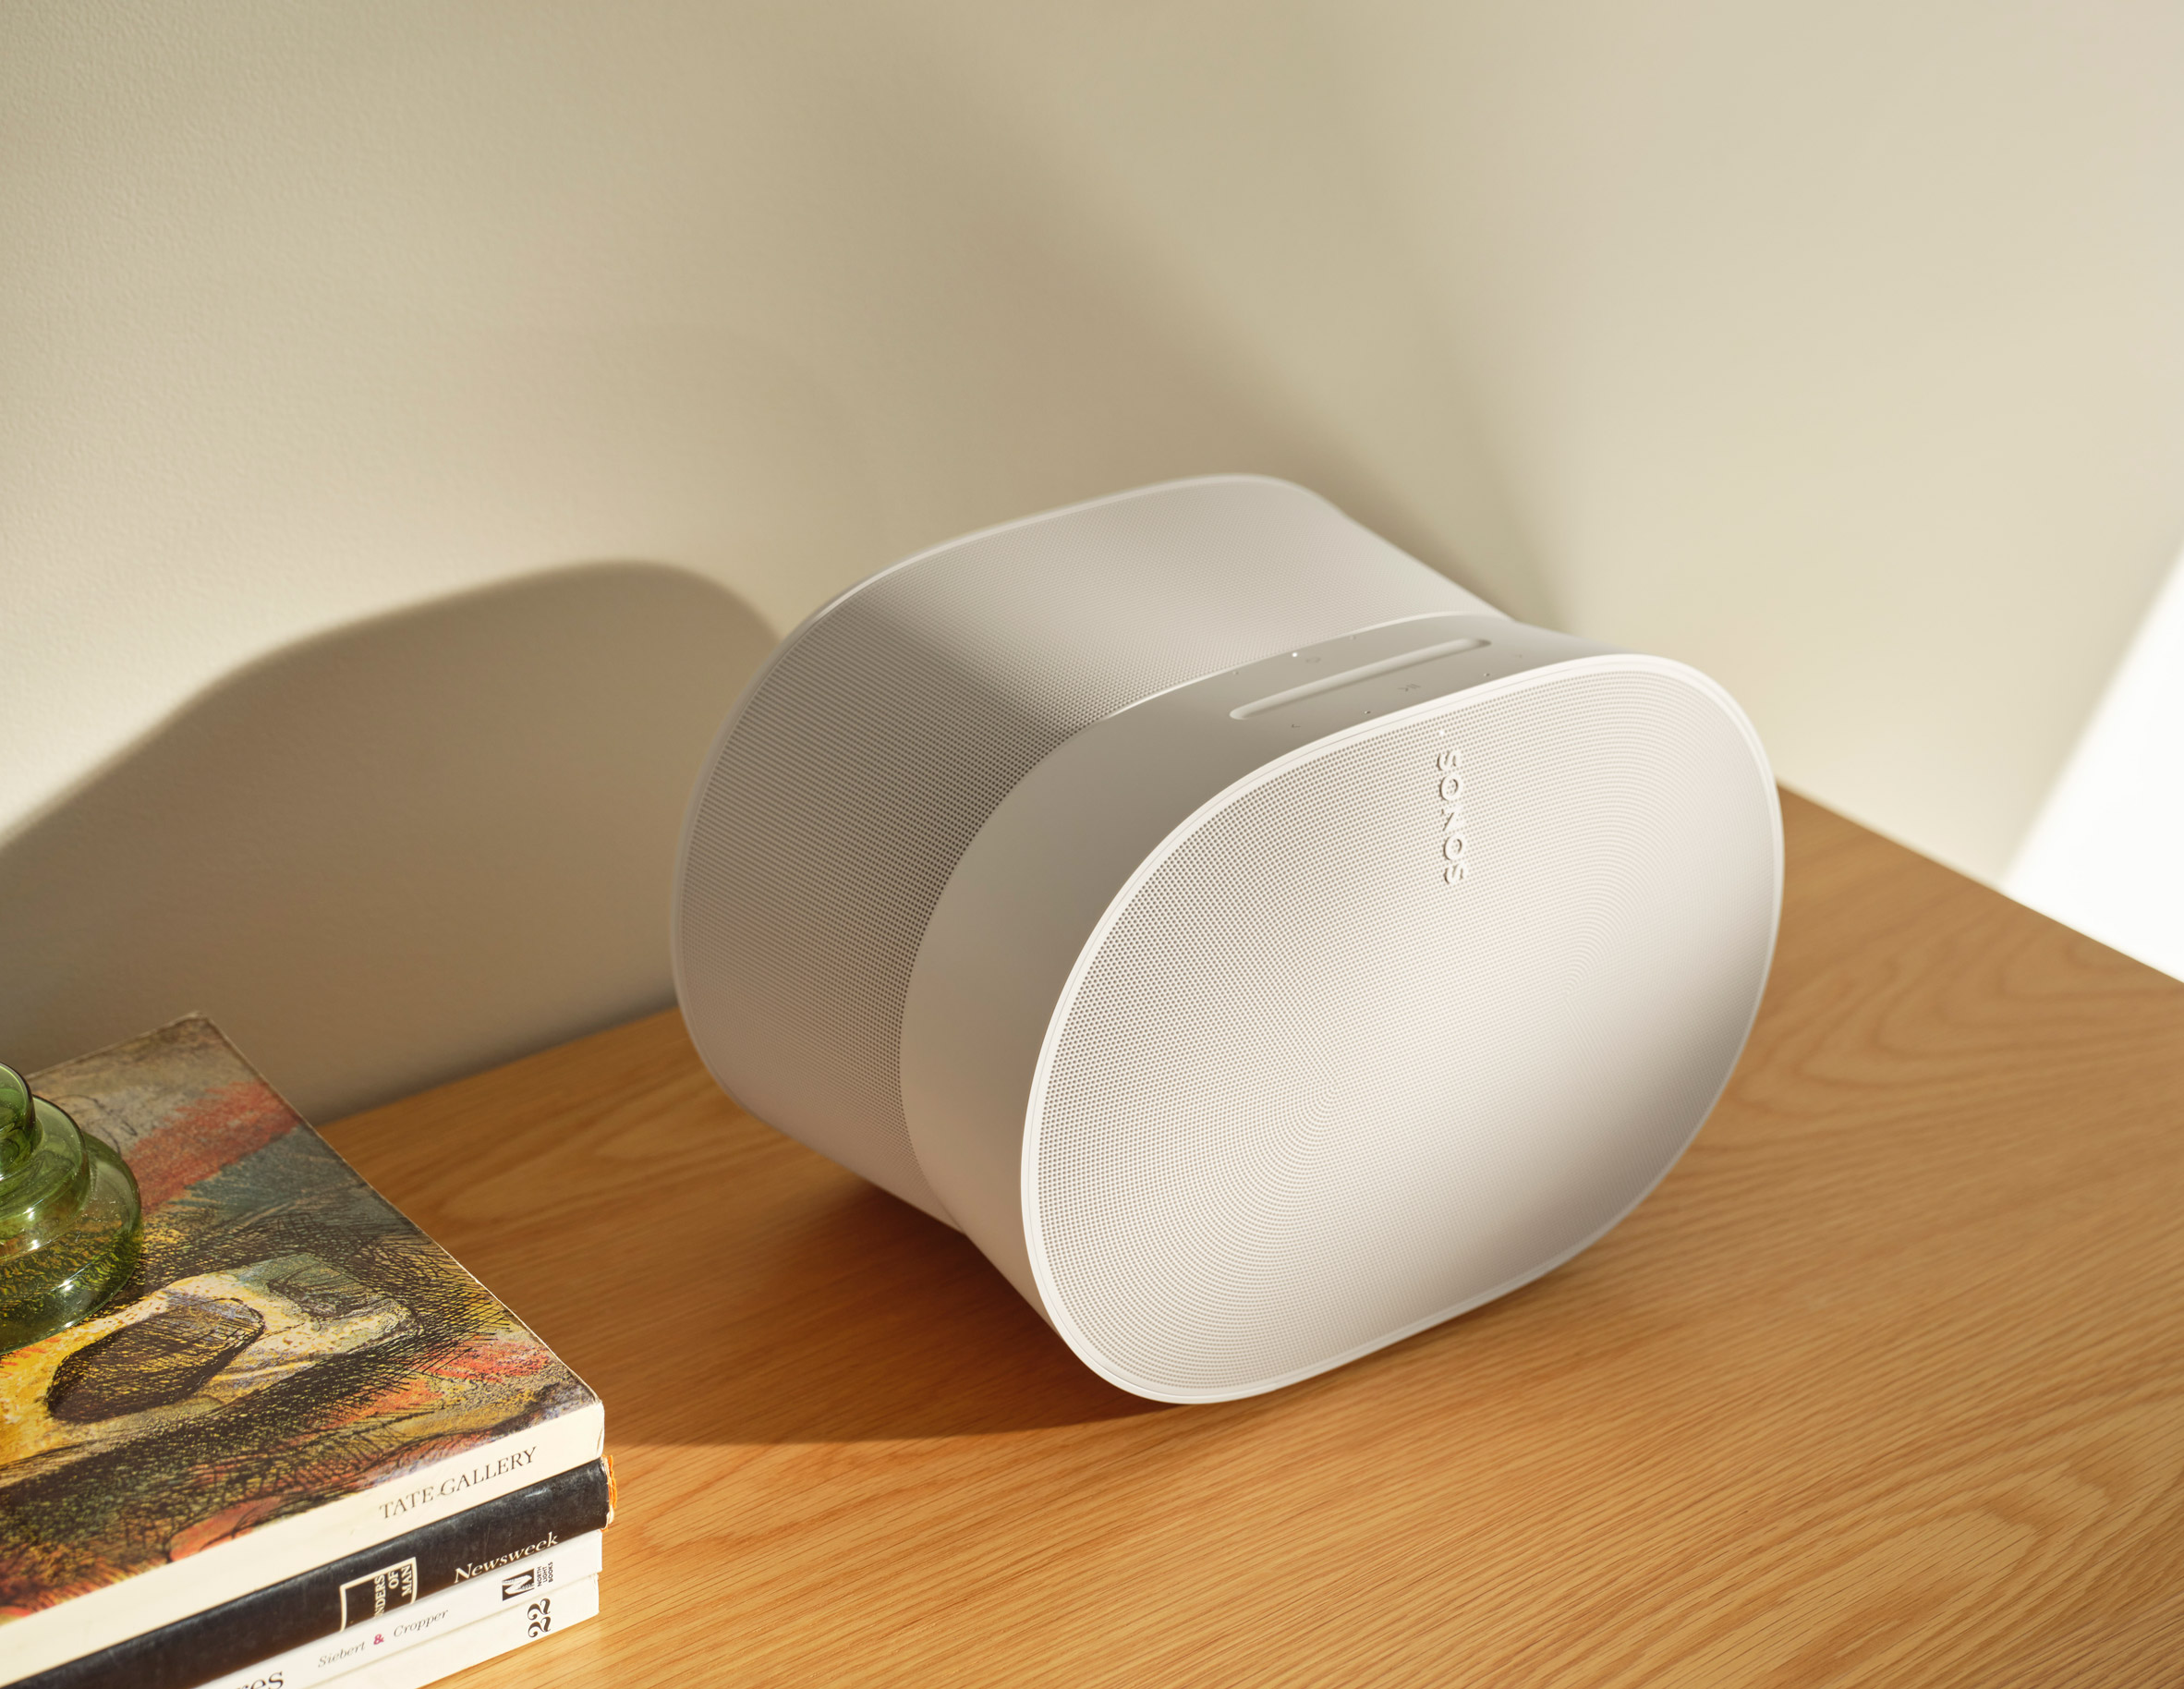 Kvarter retort vært Era 300 smart speaker is "most sophisticated product Sonos has ever built"